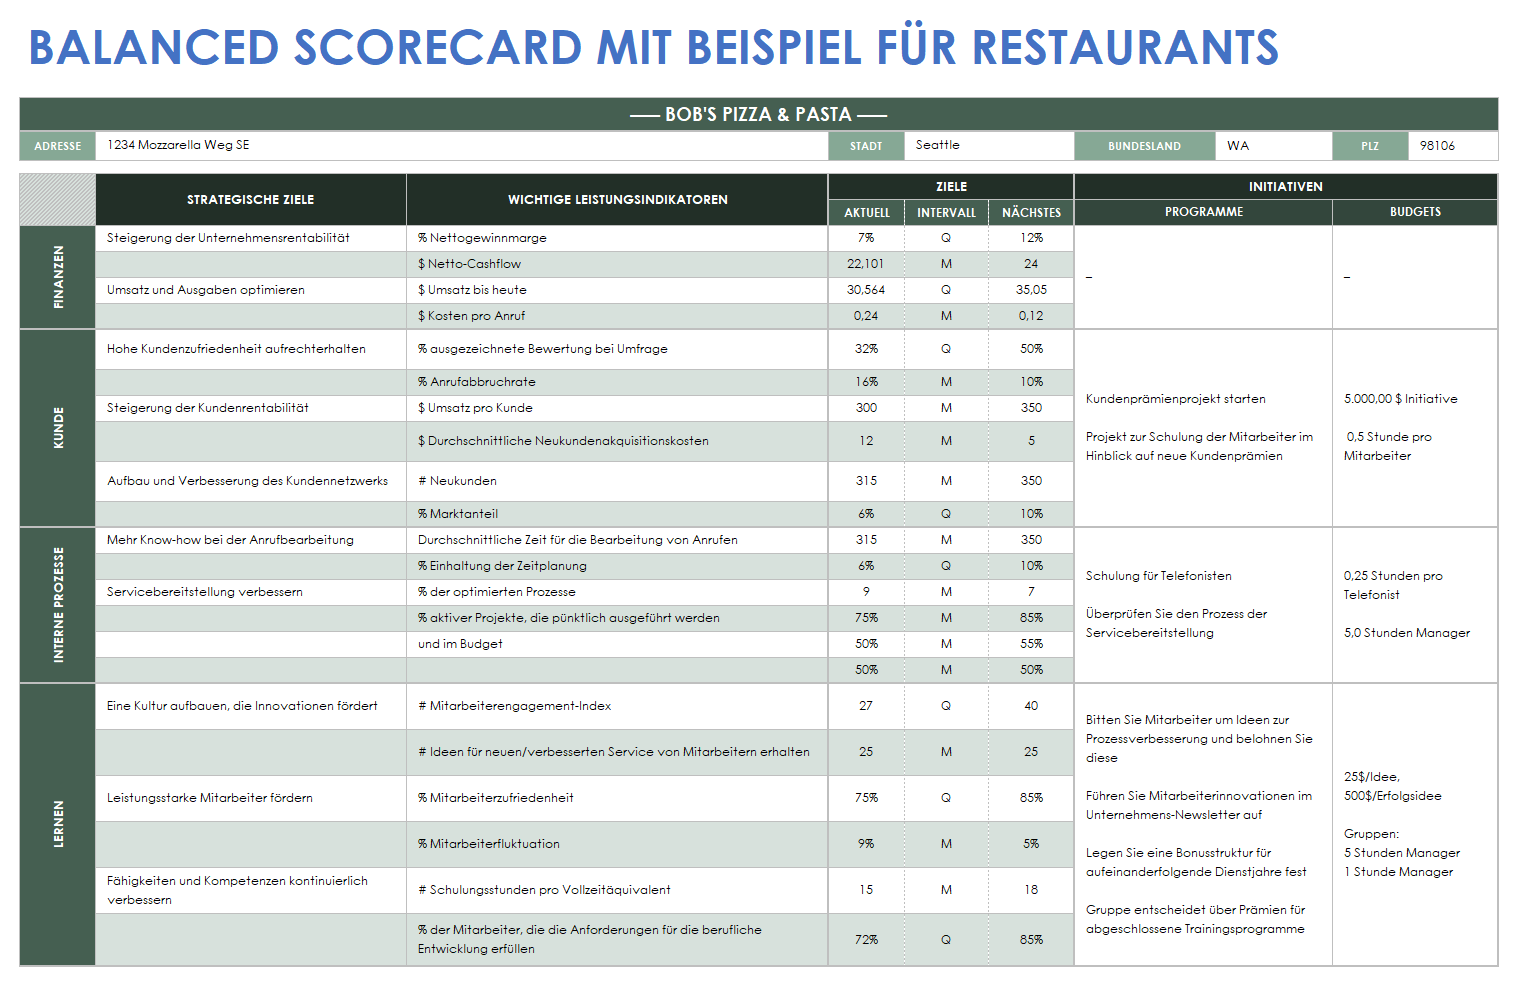  Beispielvorlage für eine Balanced Scorecard für ein Restaurant